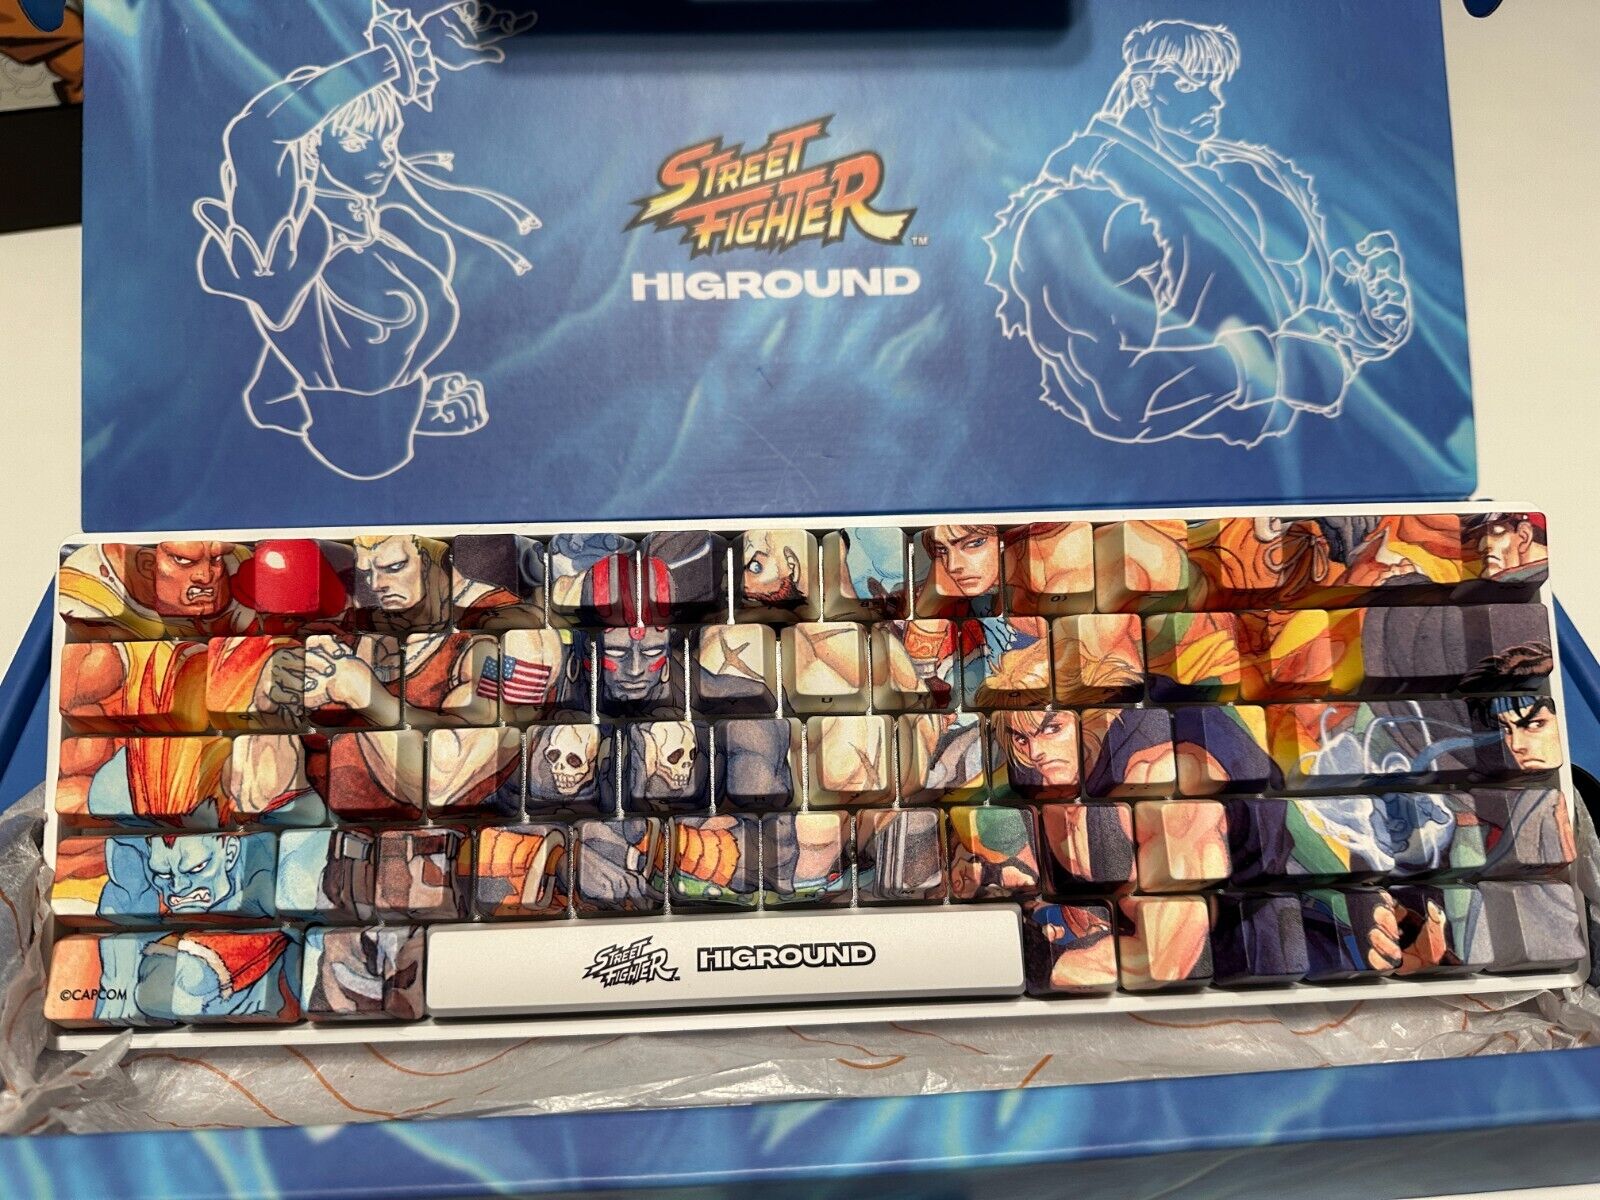 Higround x Street Fighter Mashup Base 65 Keyboard